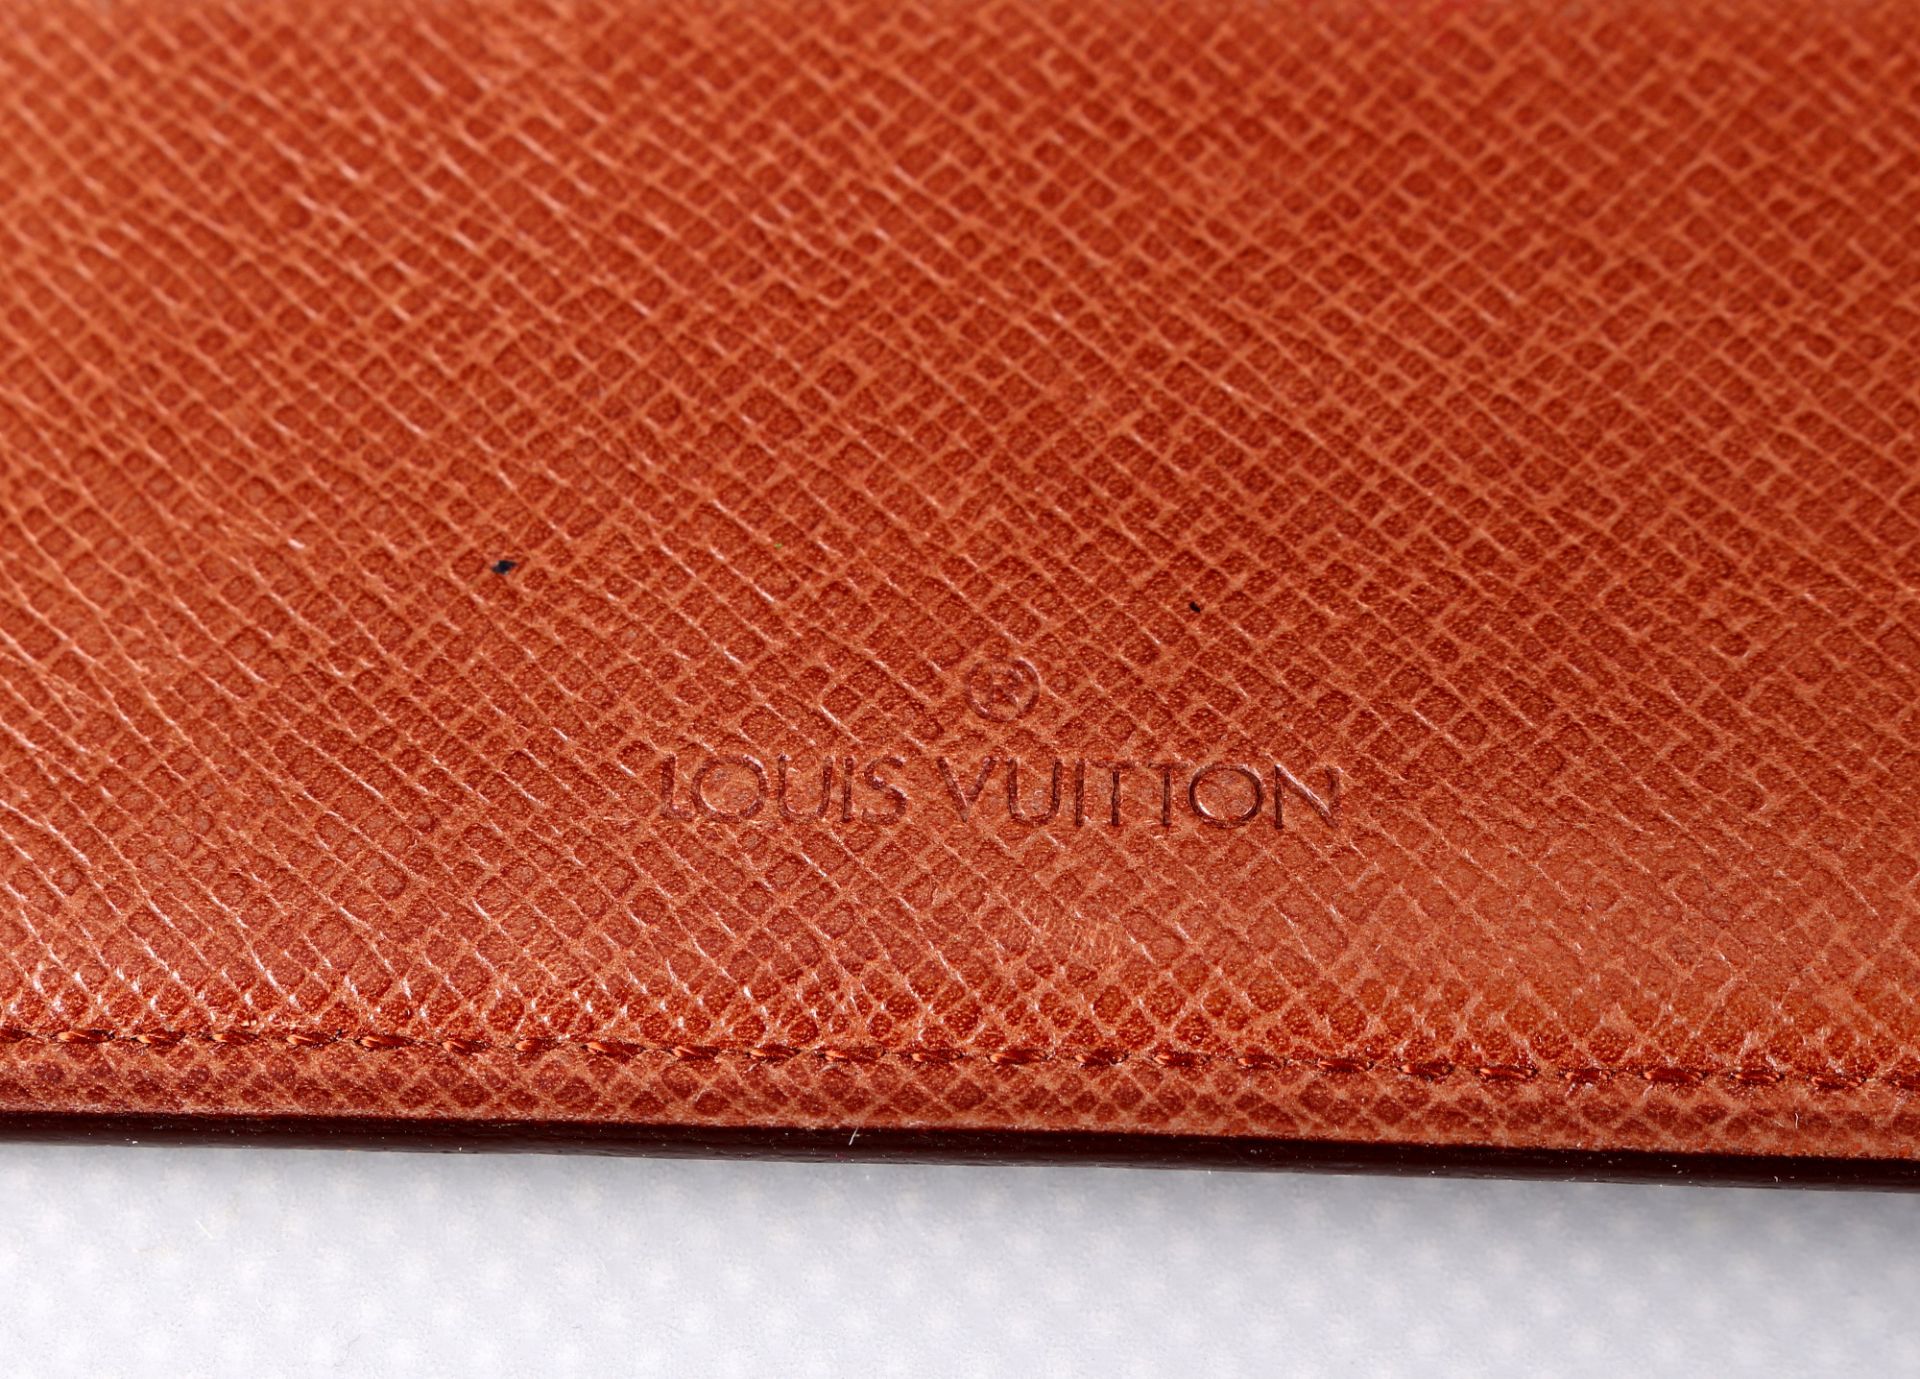 Louis Vuitton Dokumenten Reisepasshülle, - Bild 4 aus 5